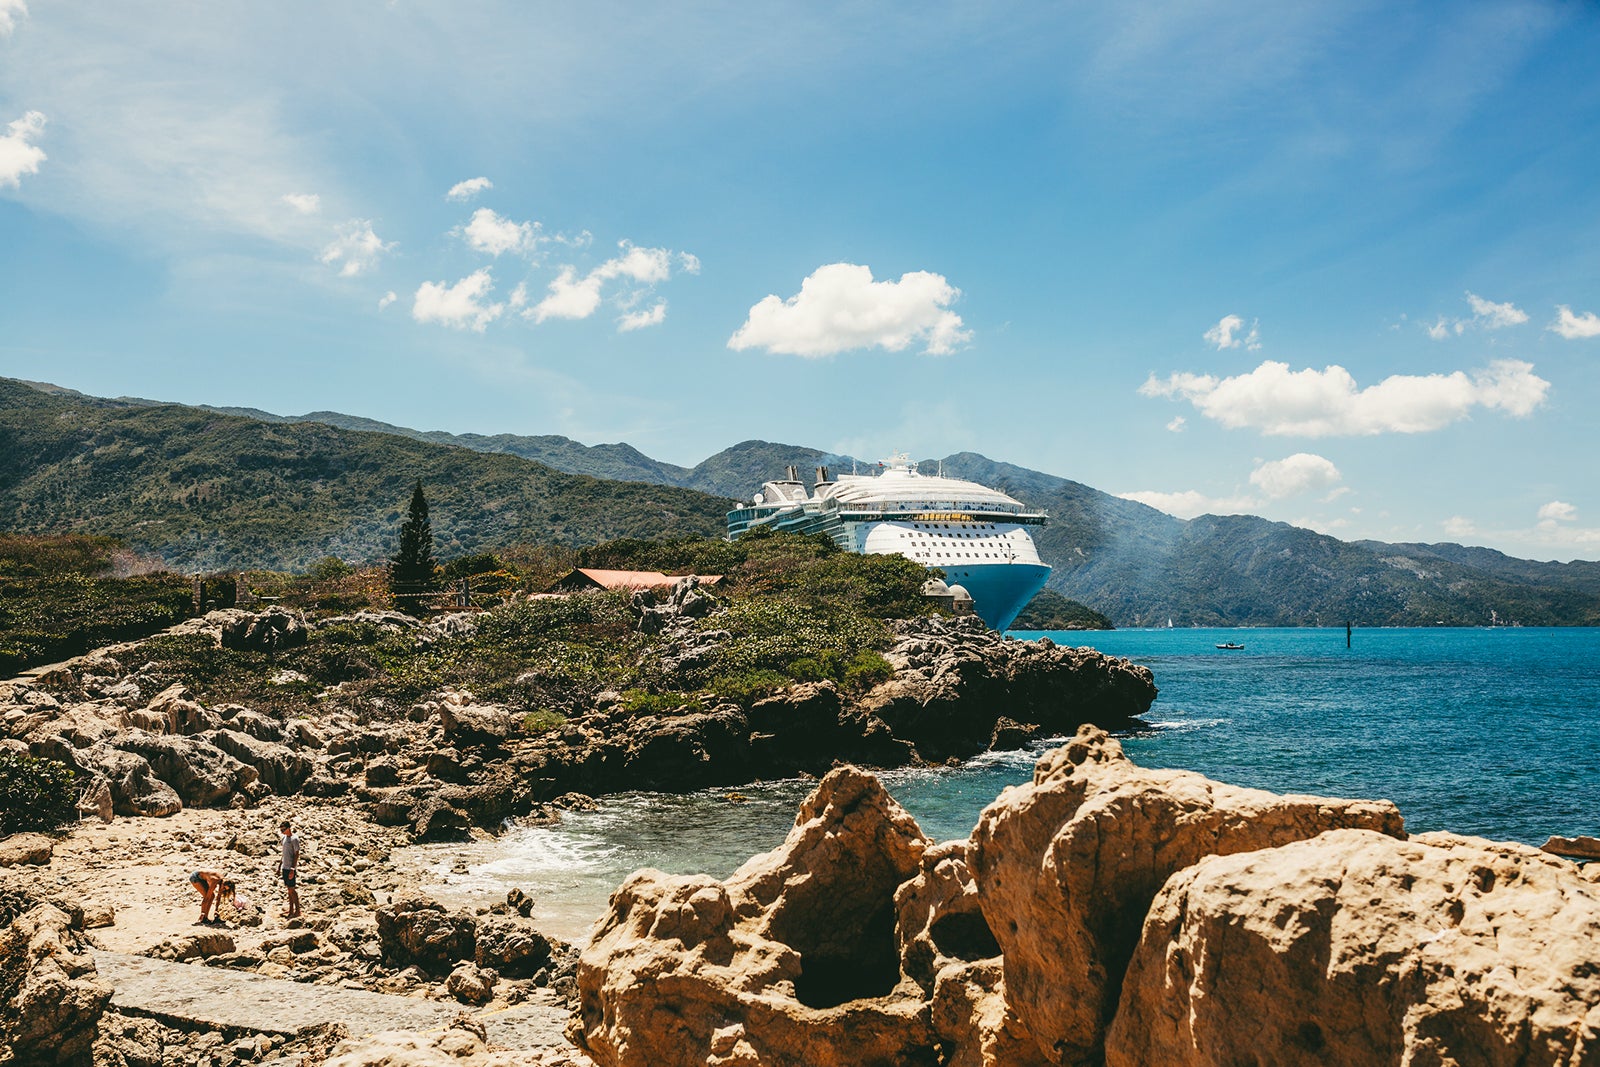 Cruise ship docked in Haiti cruising Caribbean Islands